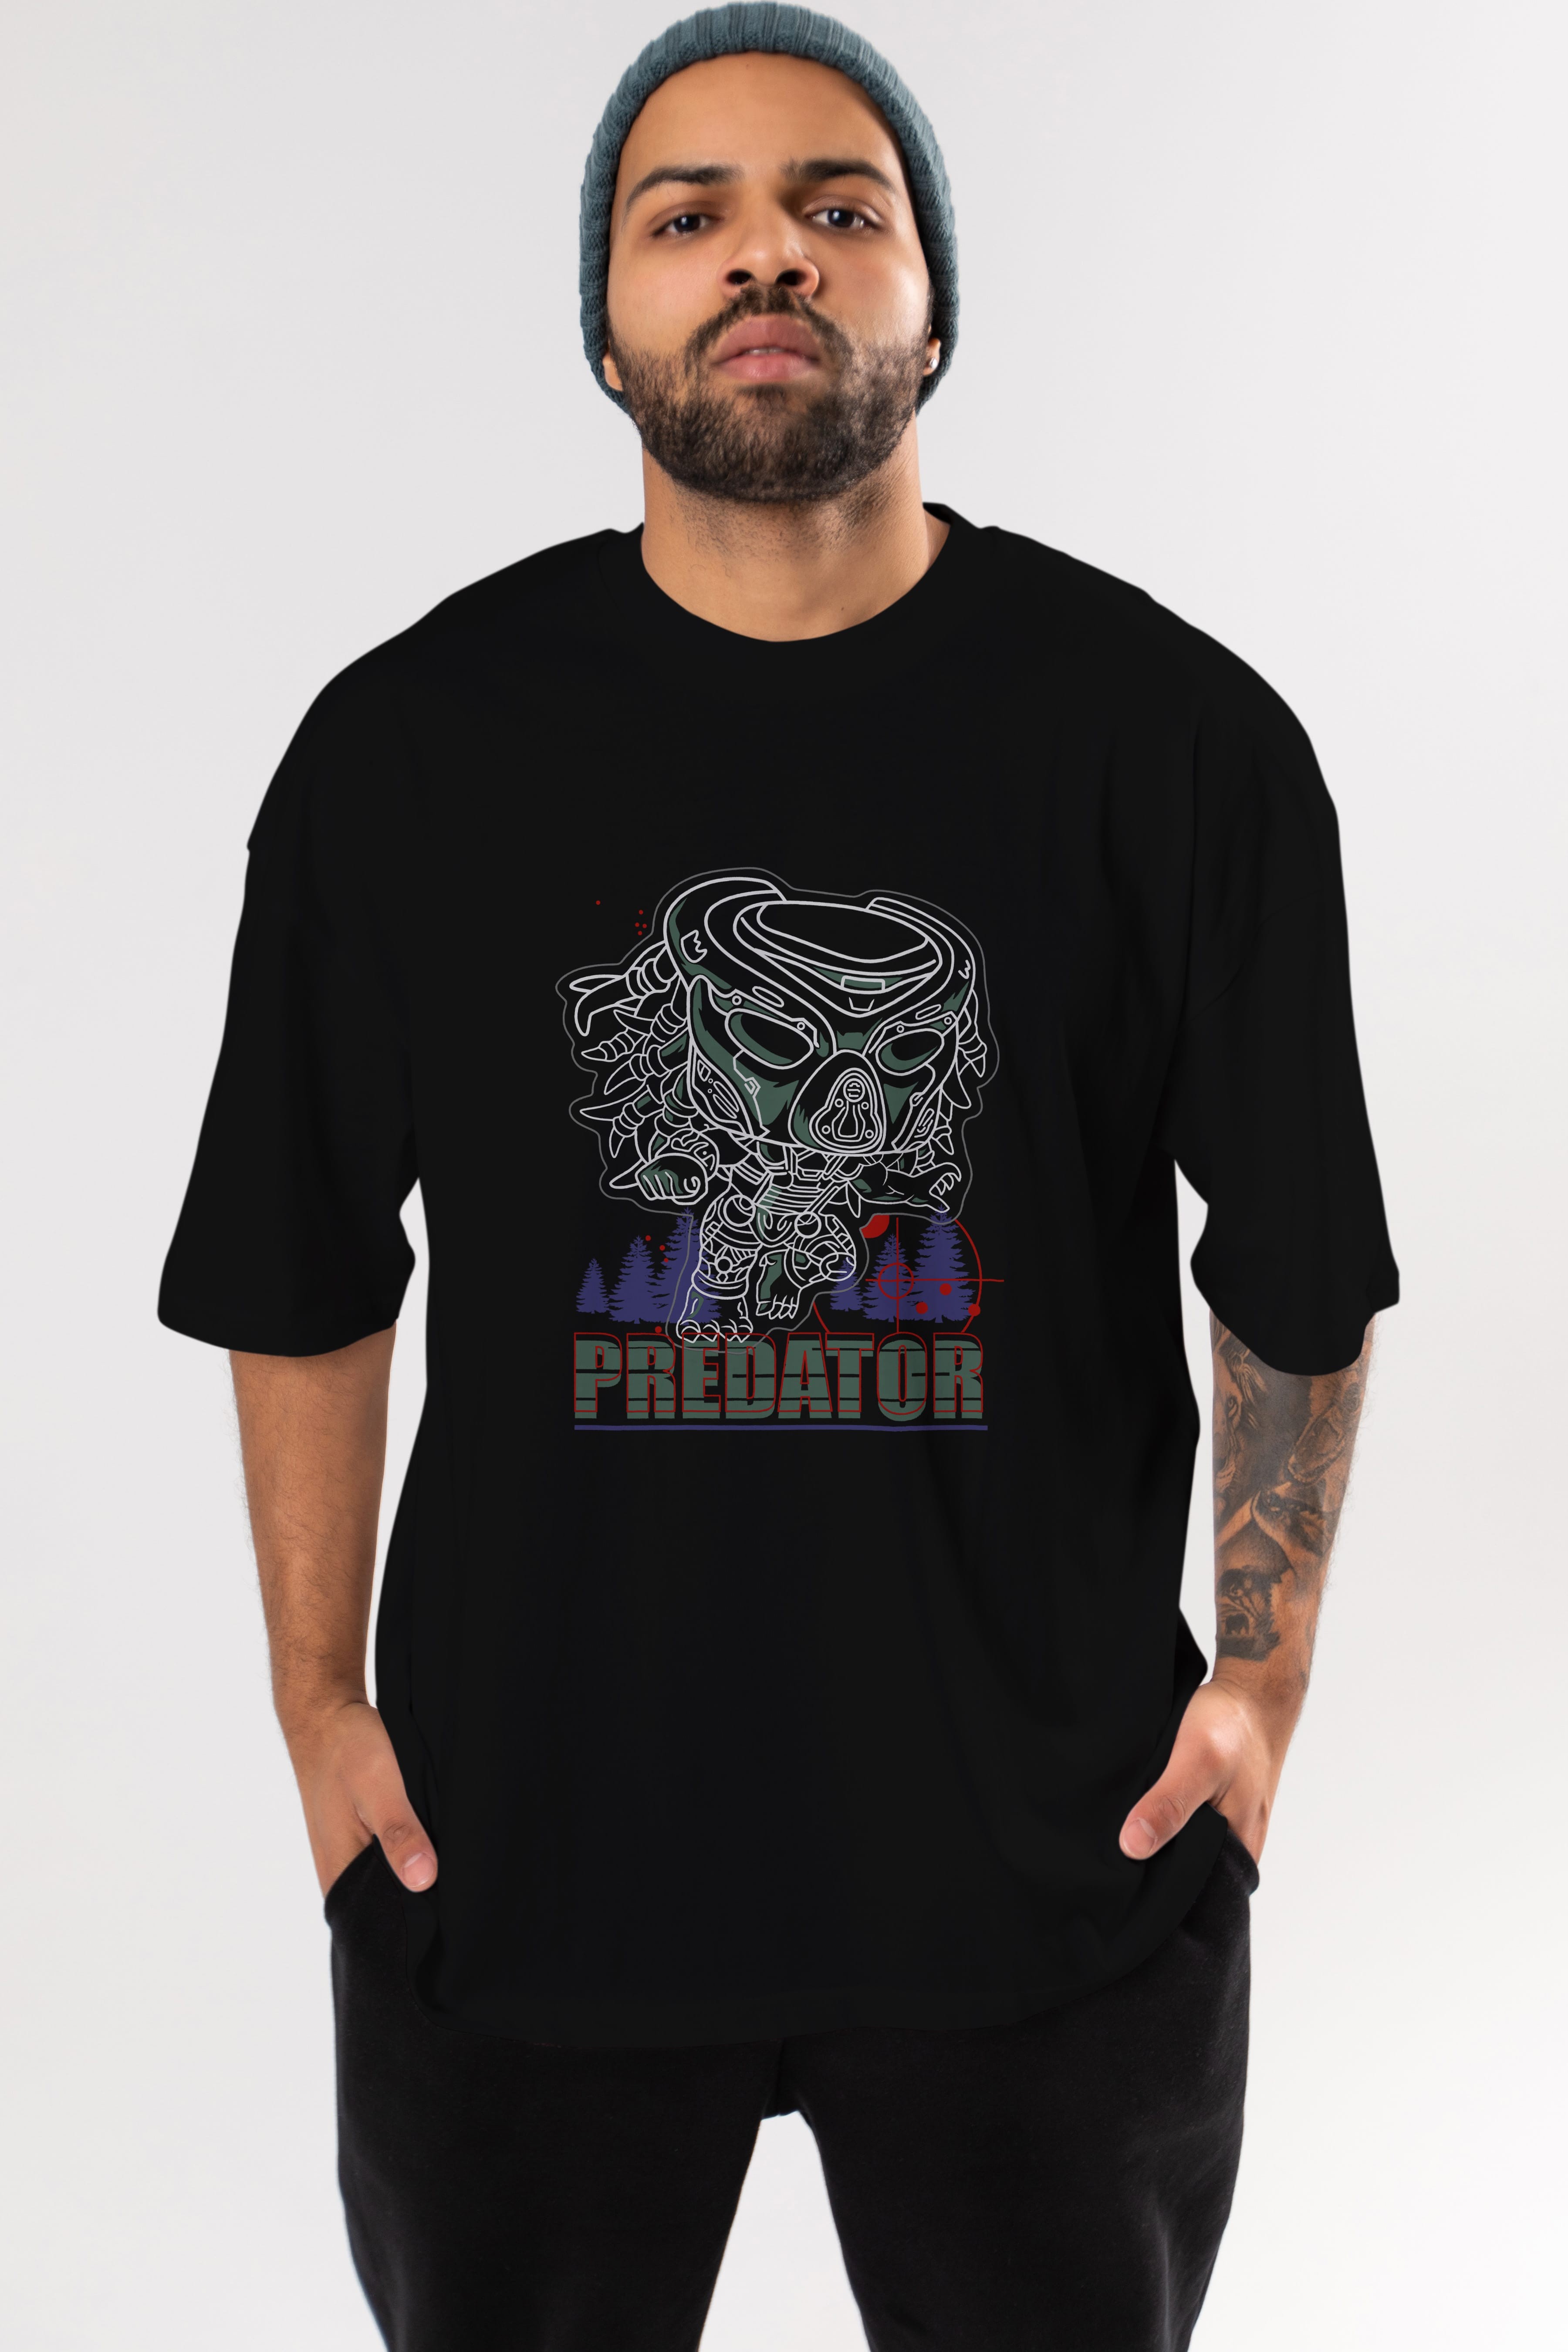 Predator Ön Baskılı Oversize t-shirt Erkek Kadın Unisex %100 Pamuk Bisiklet Yaka tişort